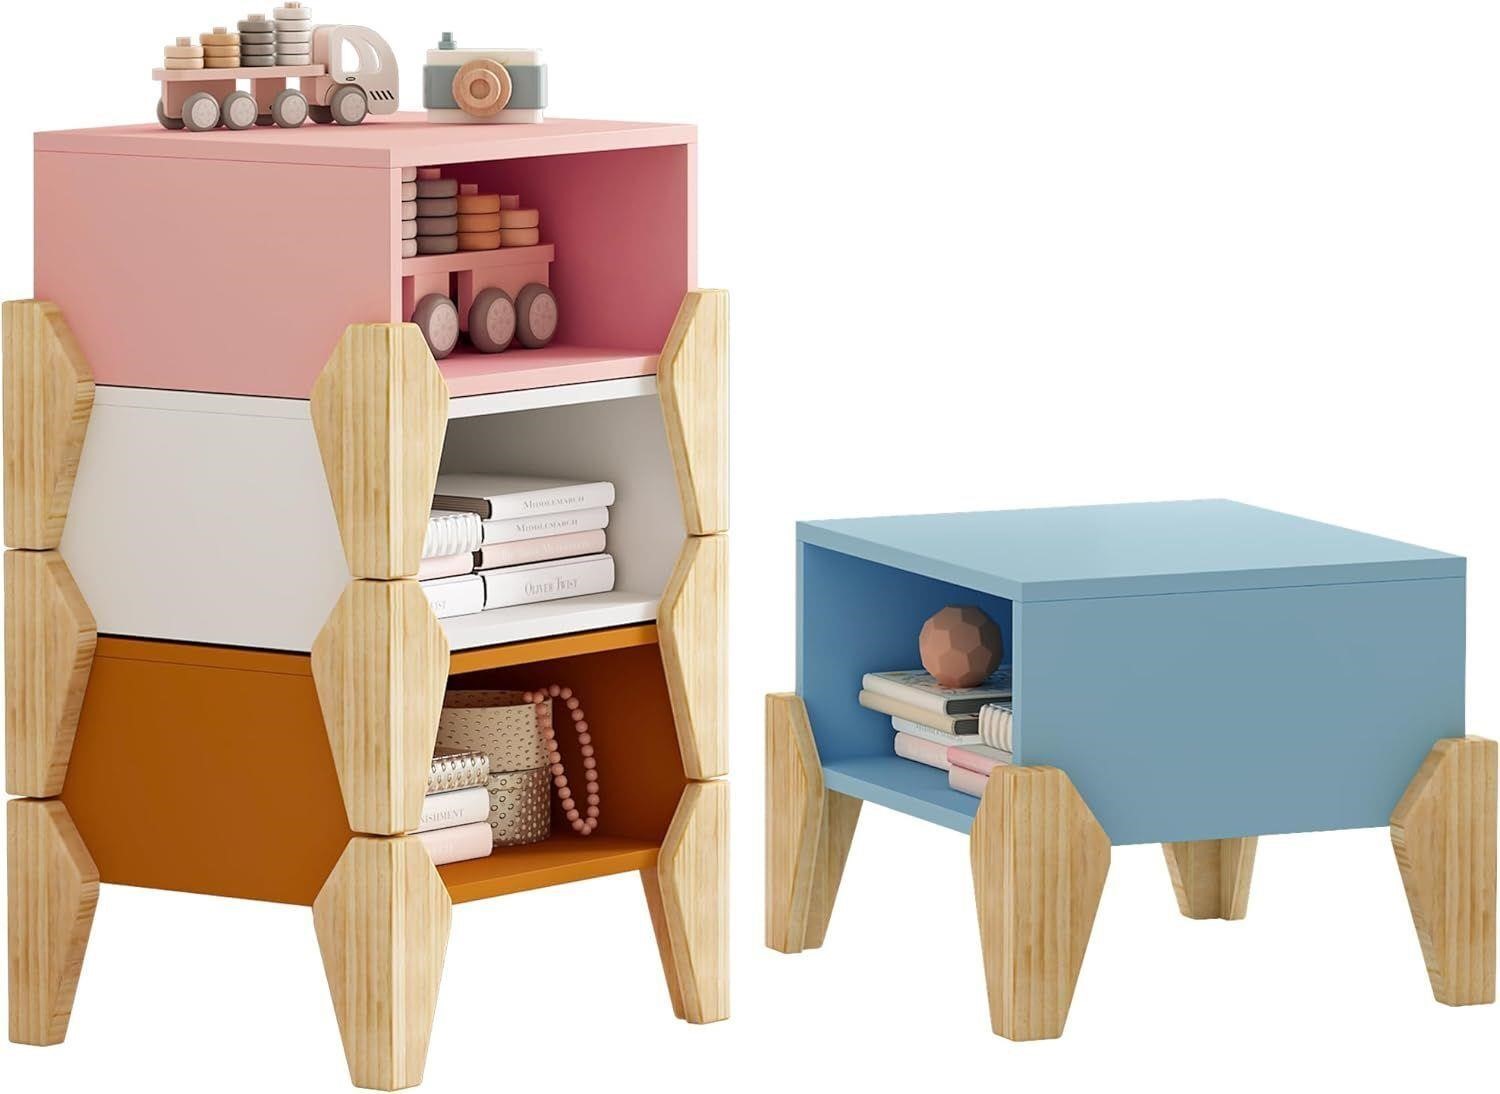 4-in-1 Modular Kids' Cubby Bookshelf Nightstands